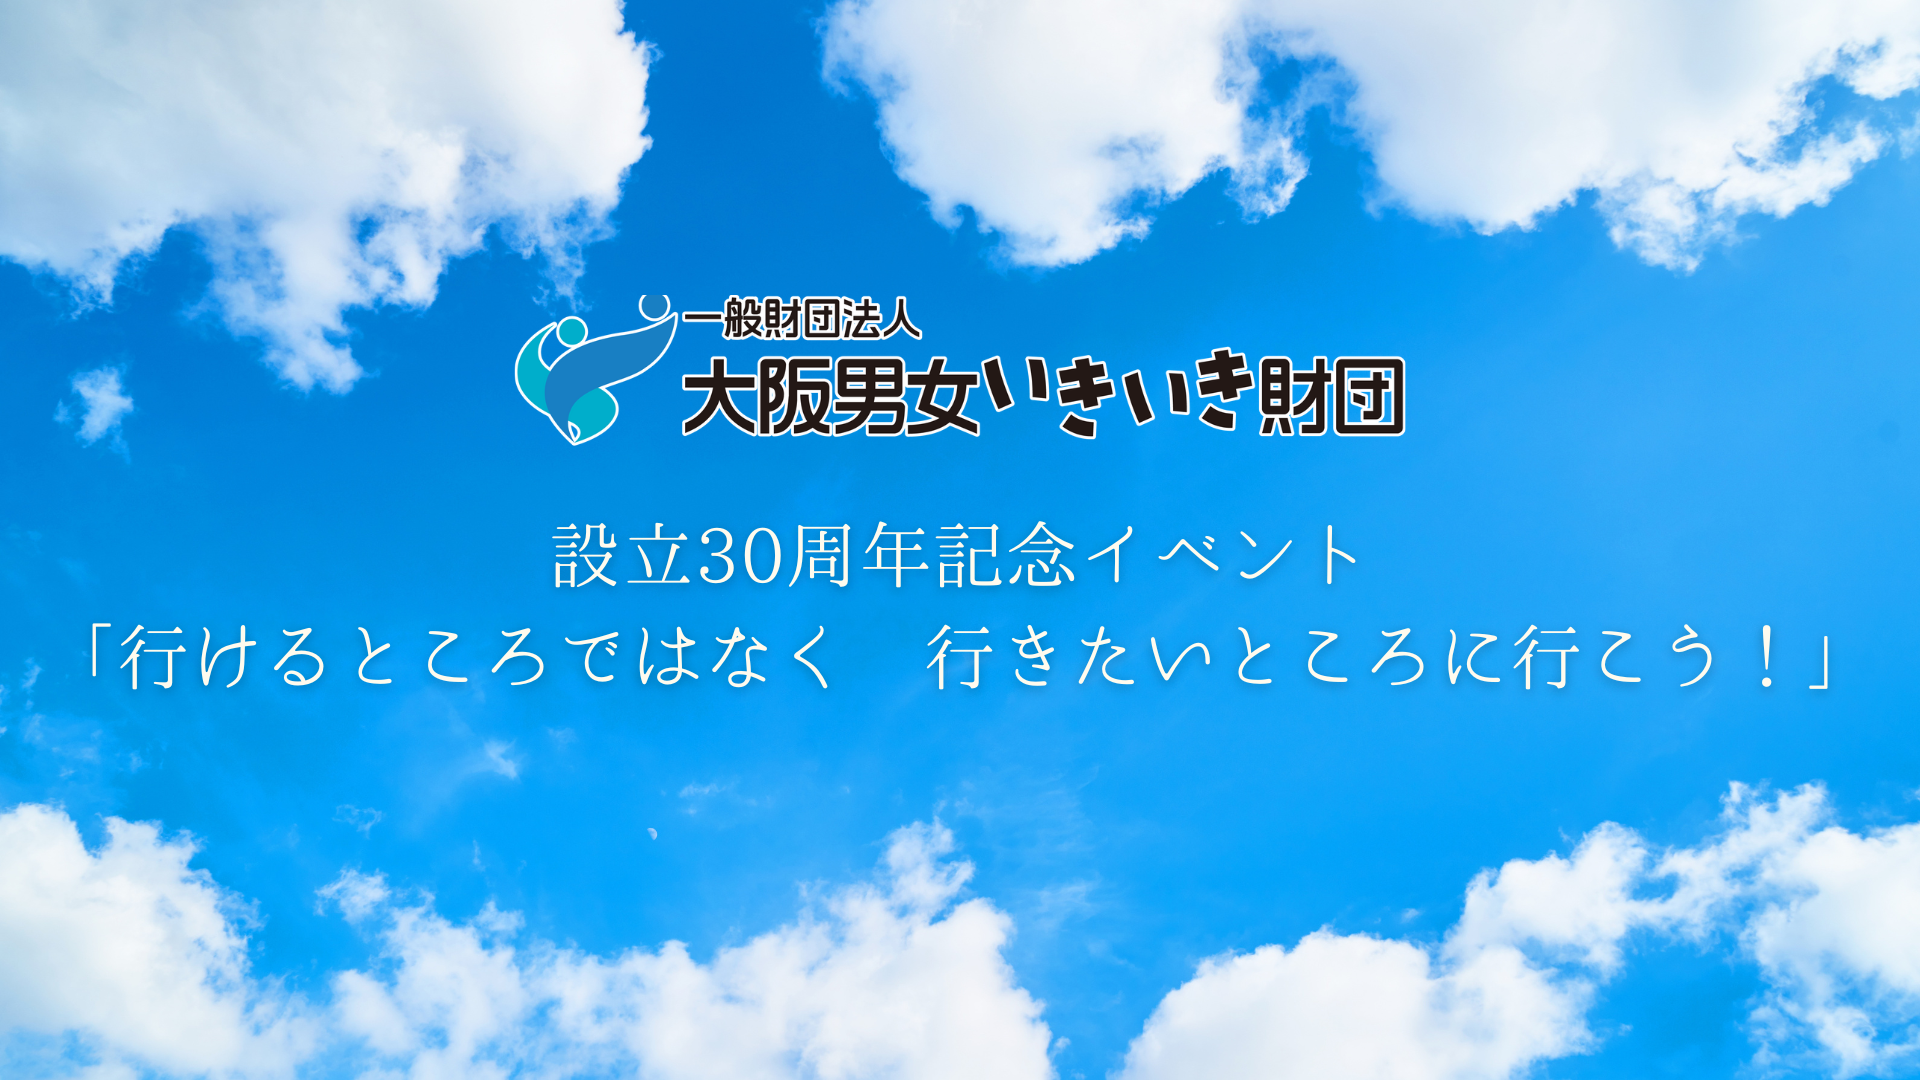 【7月14日】大阪男女いきいき財団設立30周年記念イベント開催